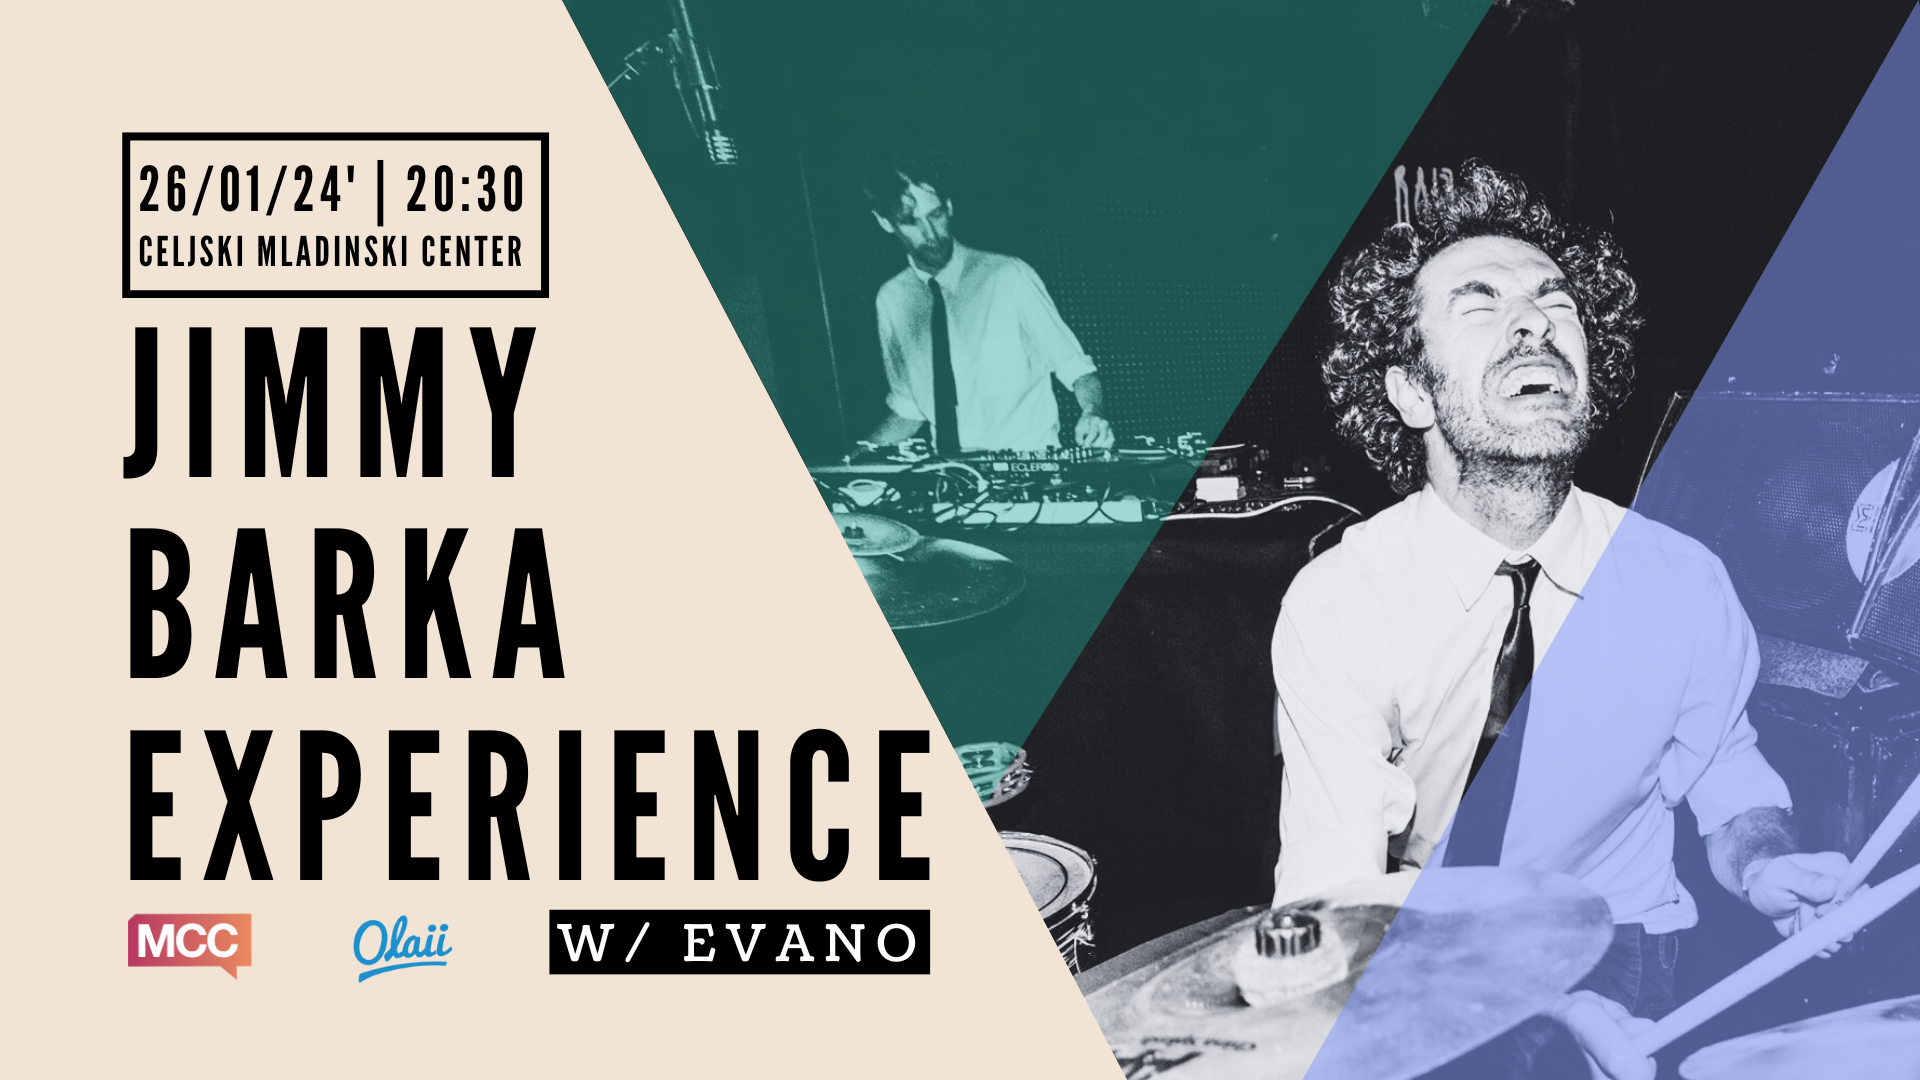 Jimmy Barka Experience w/ Evano x MCC